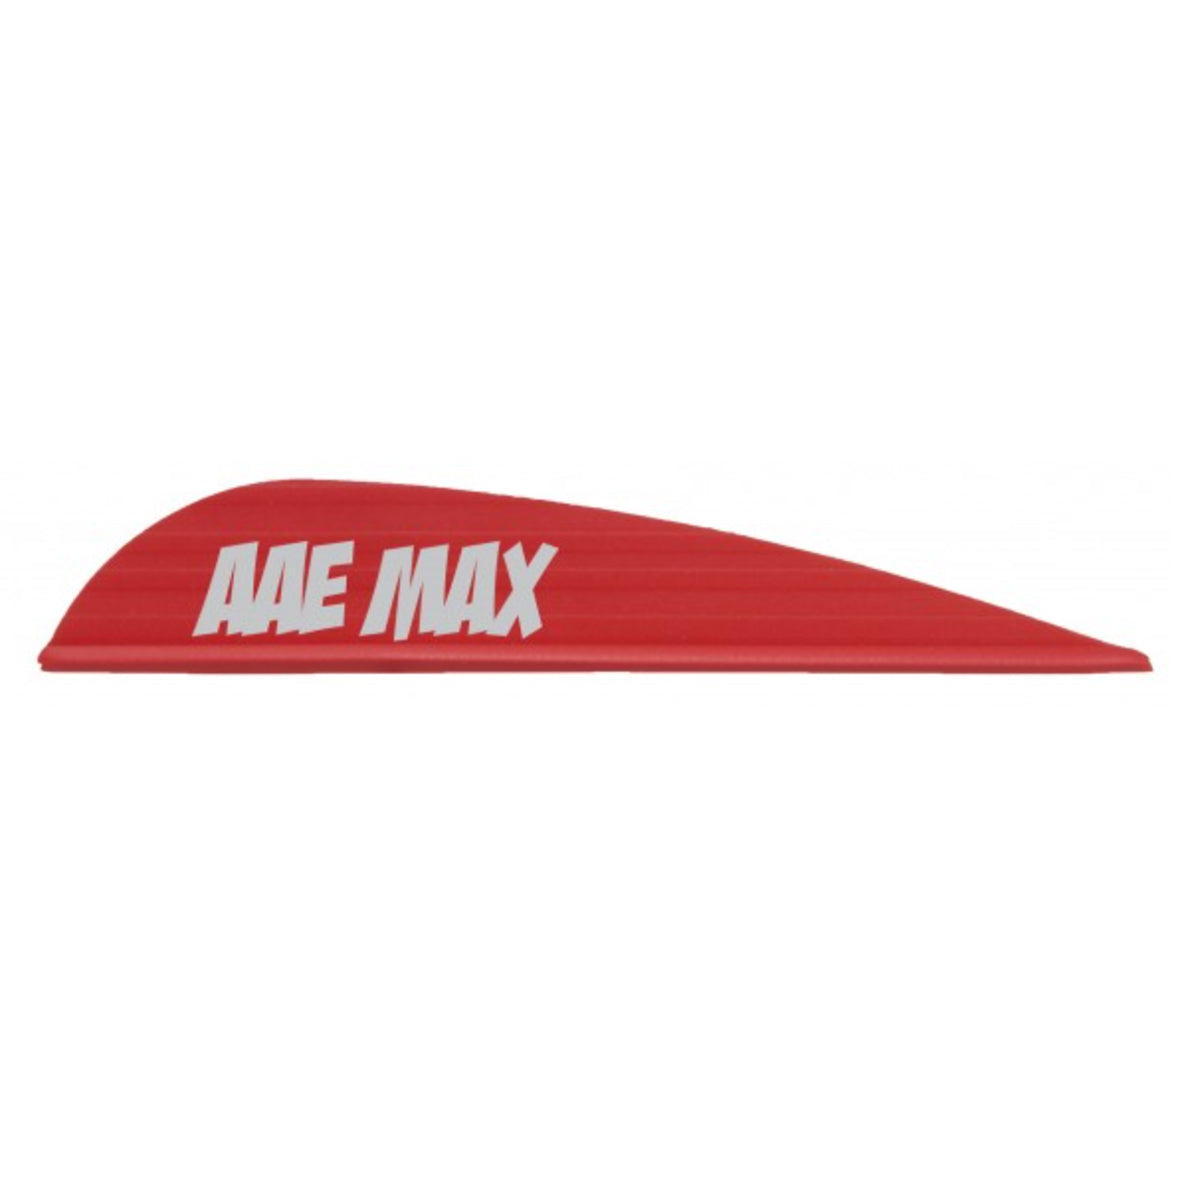 AAE Max Stealth Arrow Vanes - 40 pack in Red by GOHUNT | AAE - GOHUNT Shop